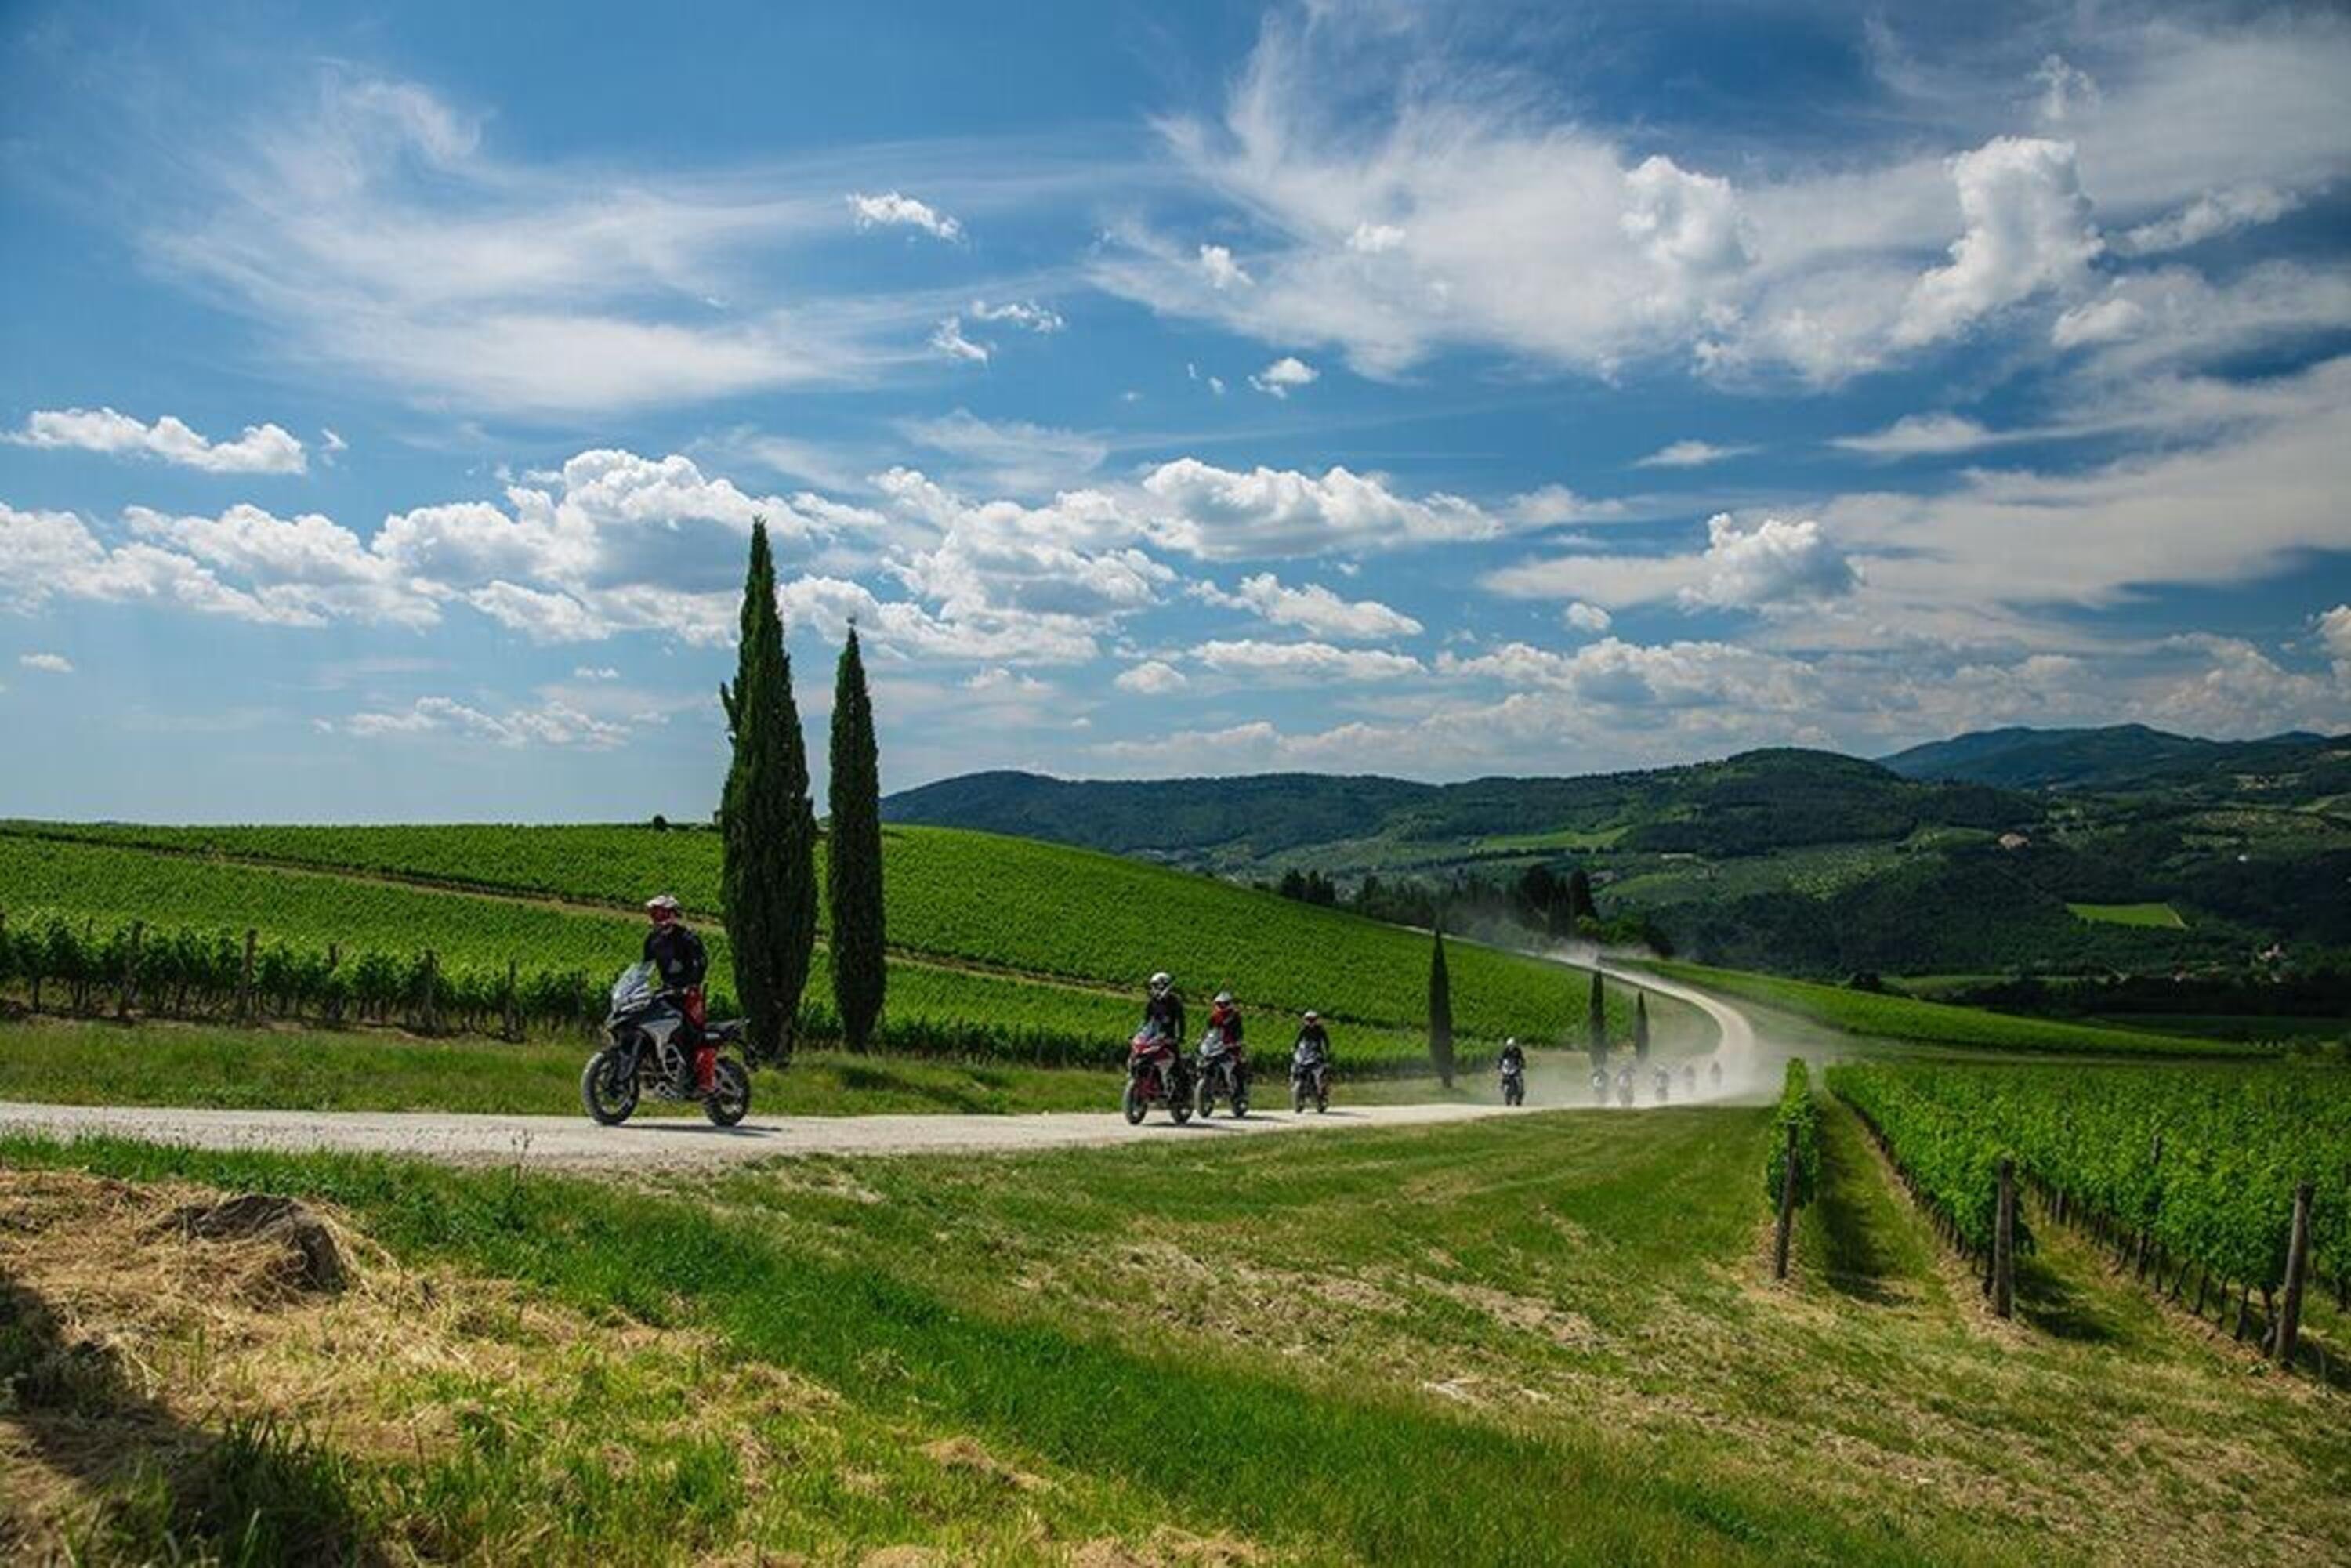 Ducati Riding Academy 2022: sei appuntamenti per la DRE Adventure